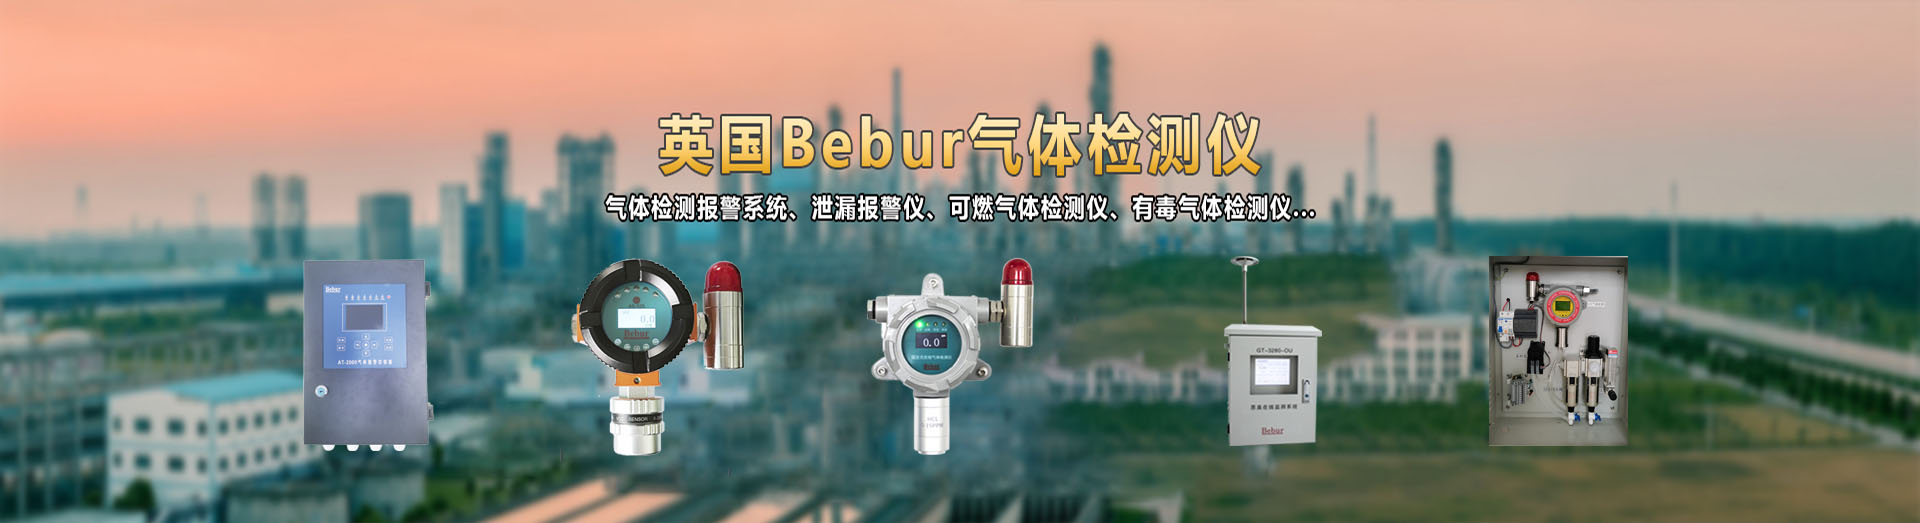 英国Bebur品牌进口泵吸式气体检测仪\泵吸式气体分析仪系列产品